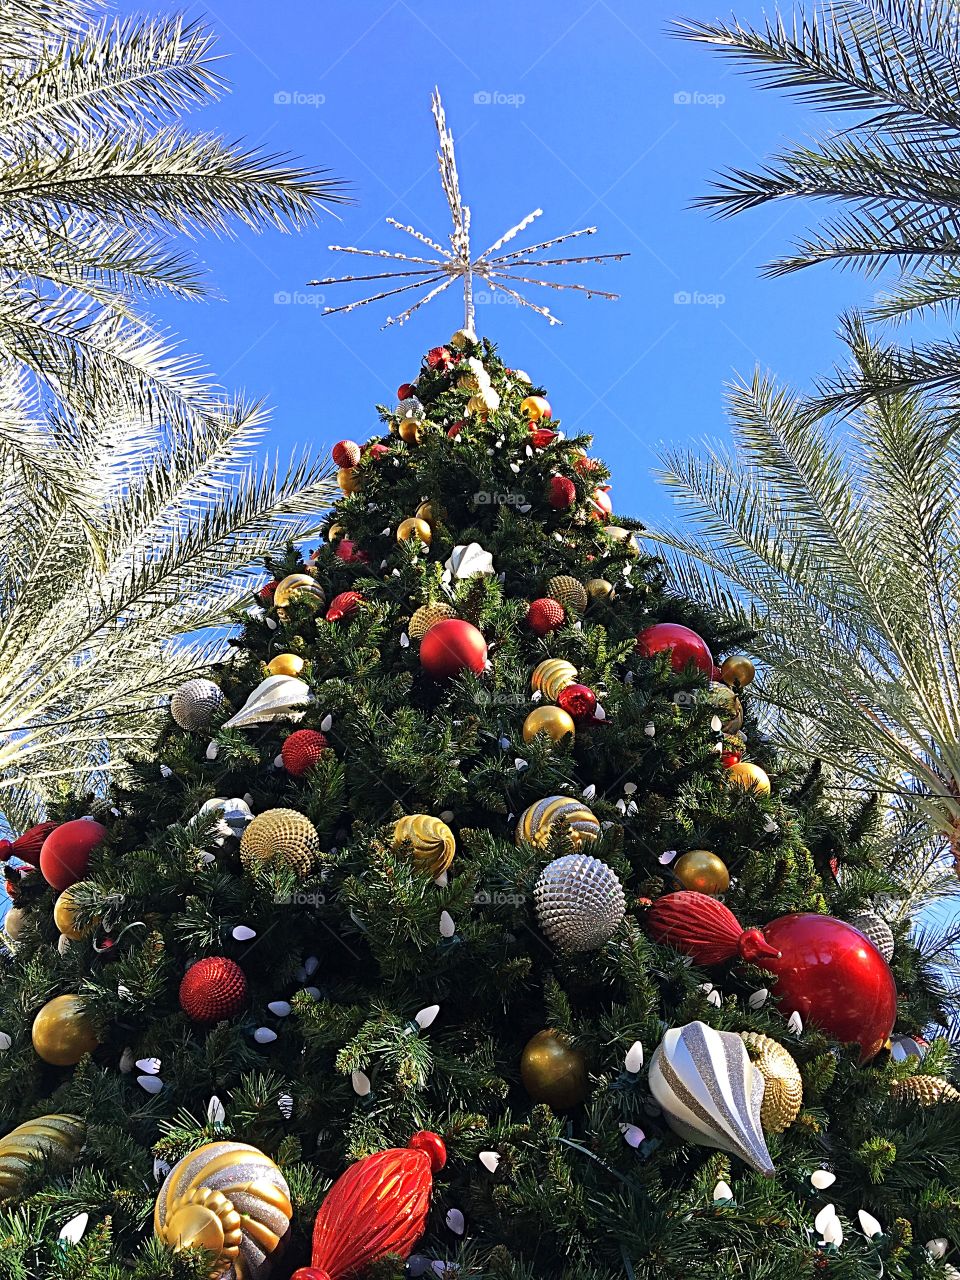 Desert Christmas tree.